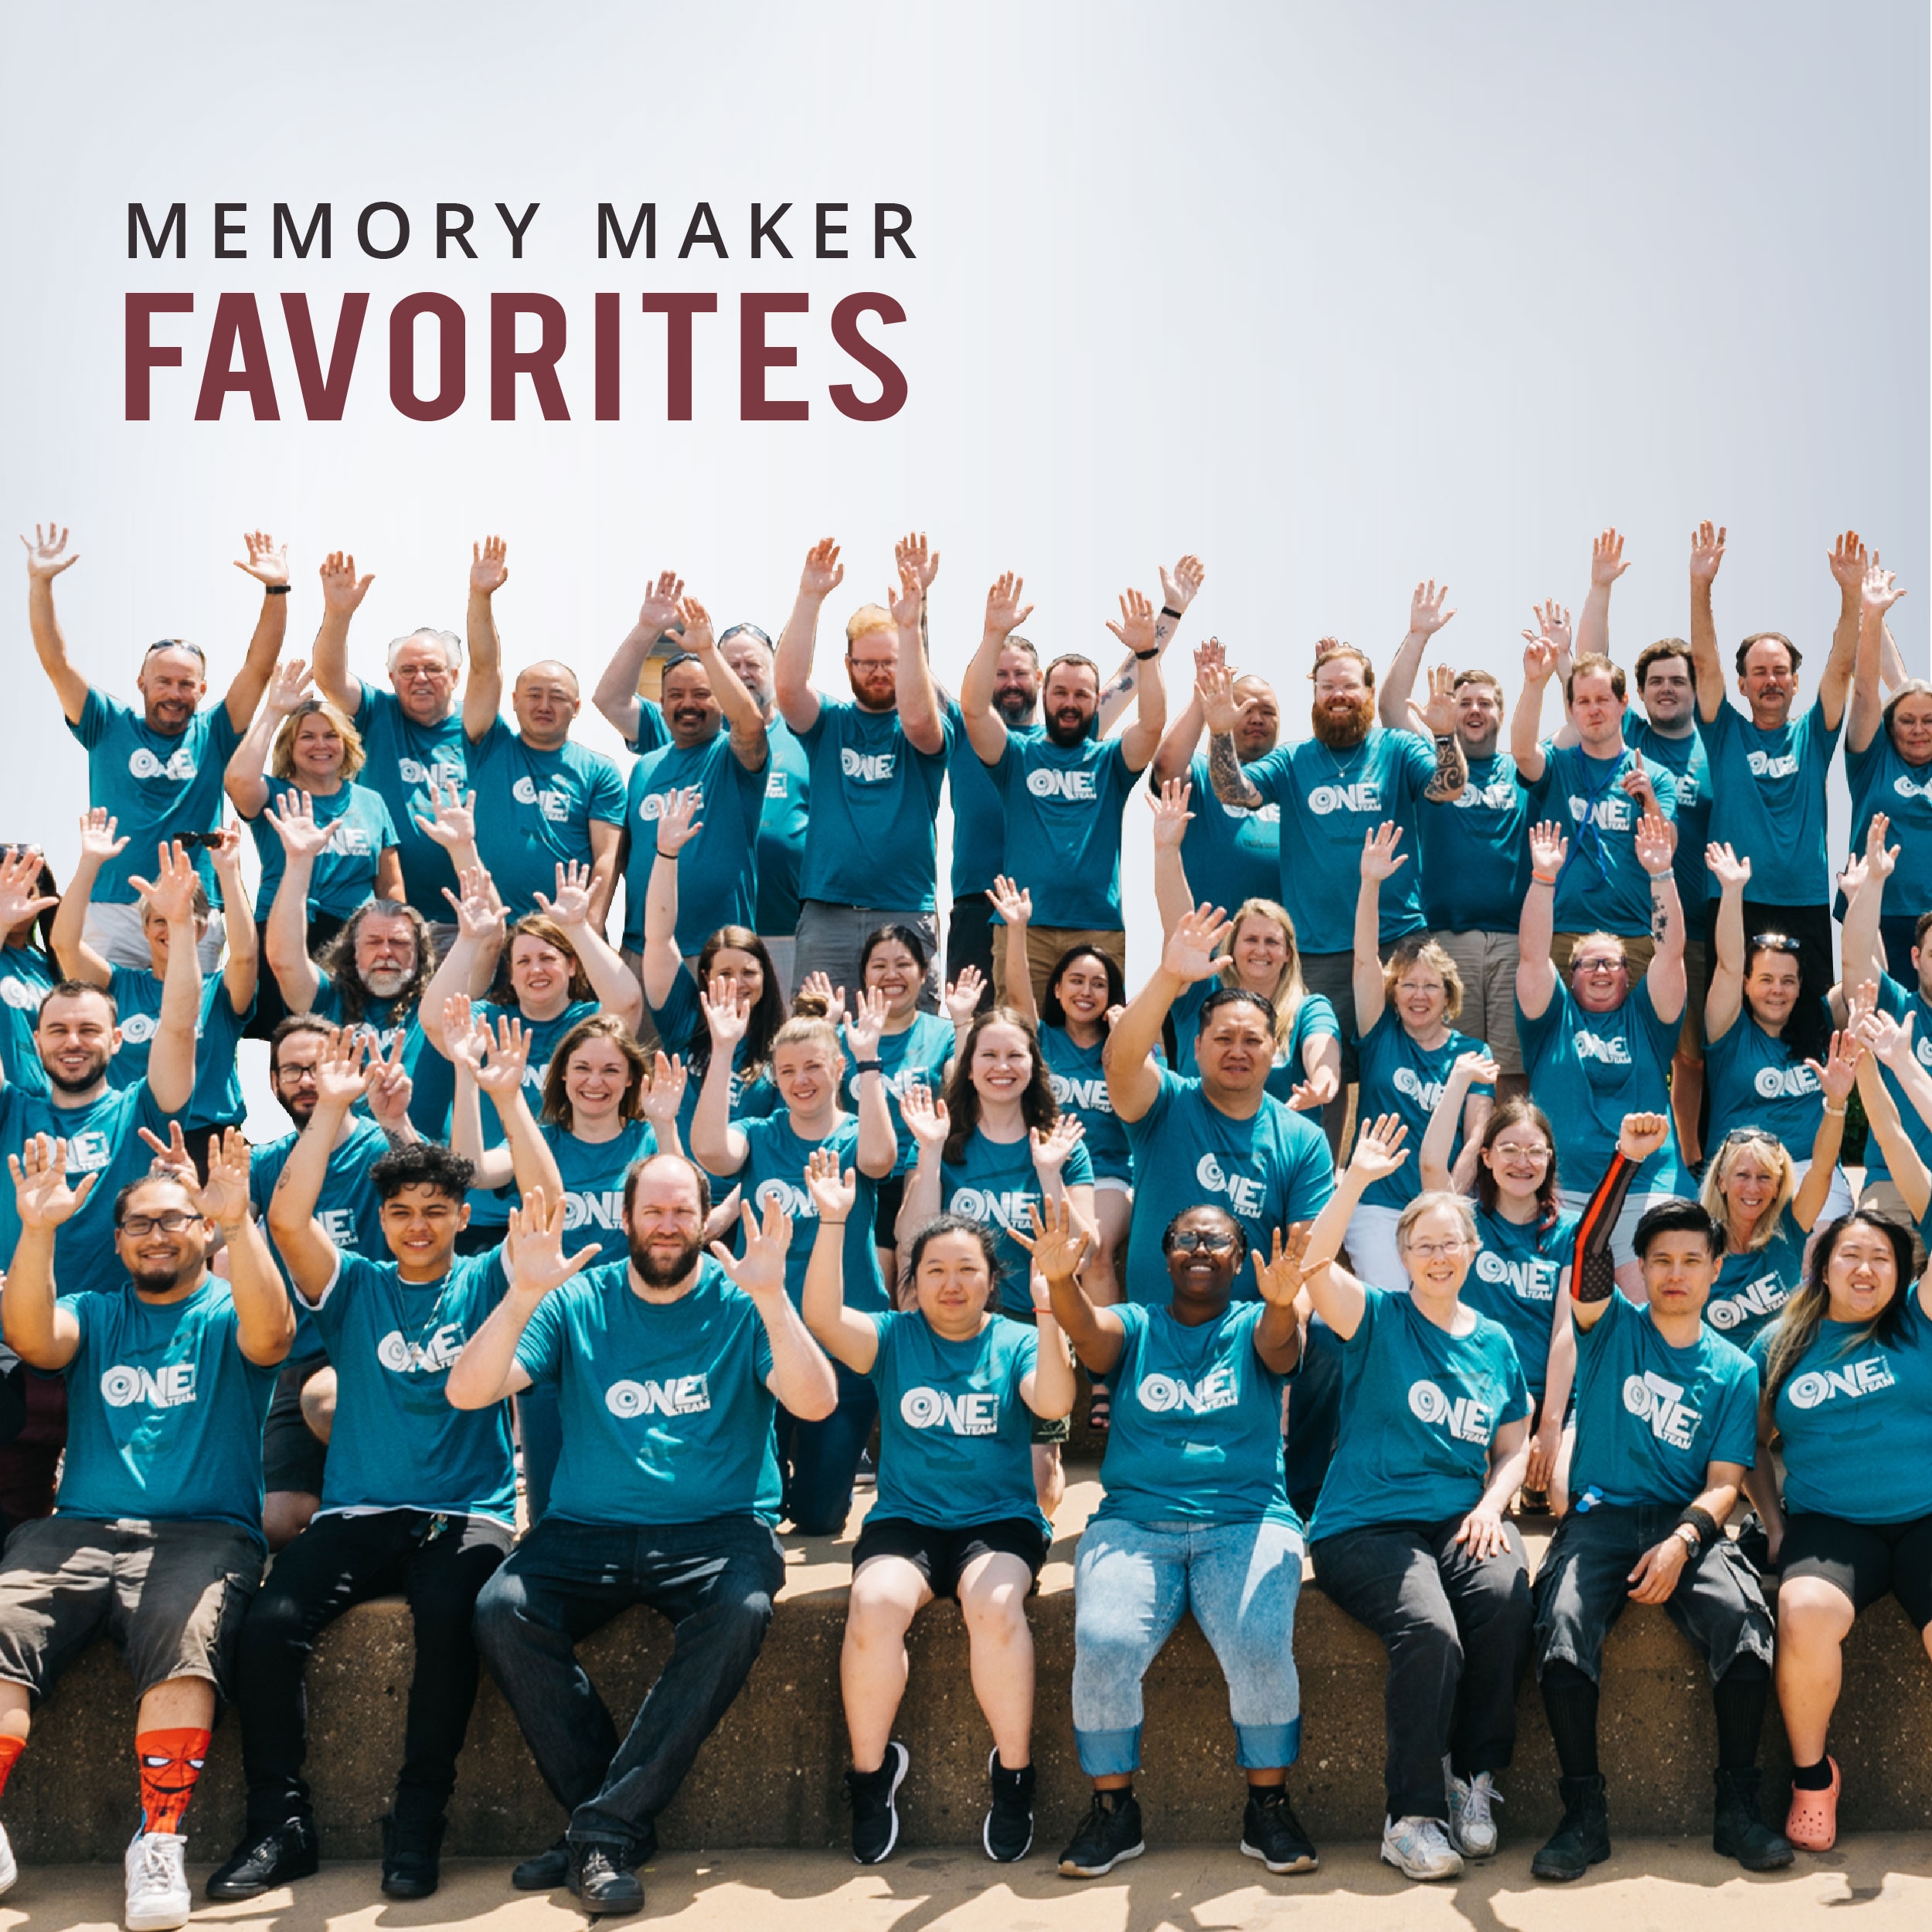 Memory Makers' Favorite Awards